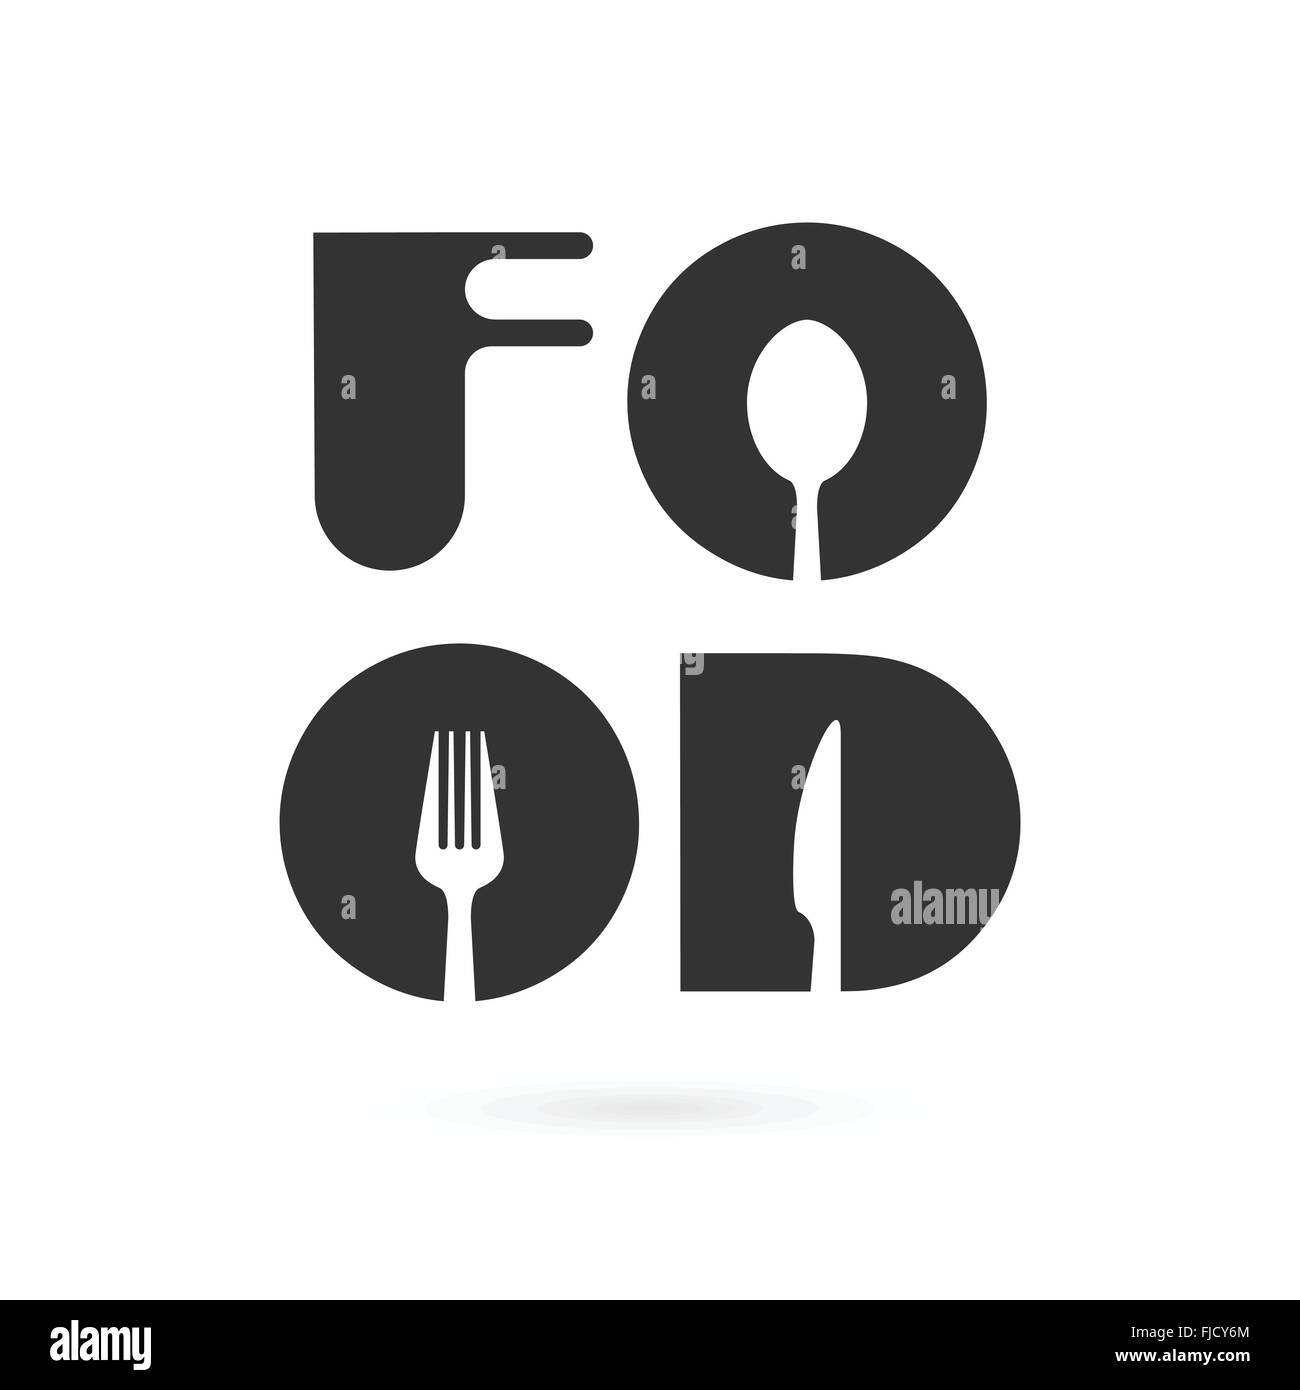 Kreative Küche Wort Logo Designelemente mit Löffel, Messer und Gabel. Fastfood-Logo, Essen und trinken-Konzept. Vektor-illustration Stock Vektor